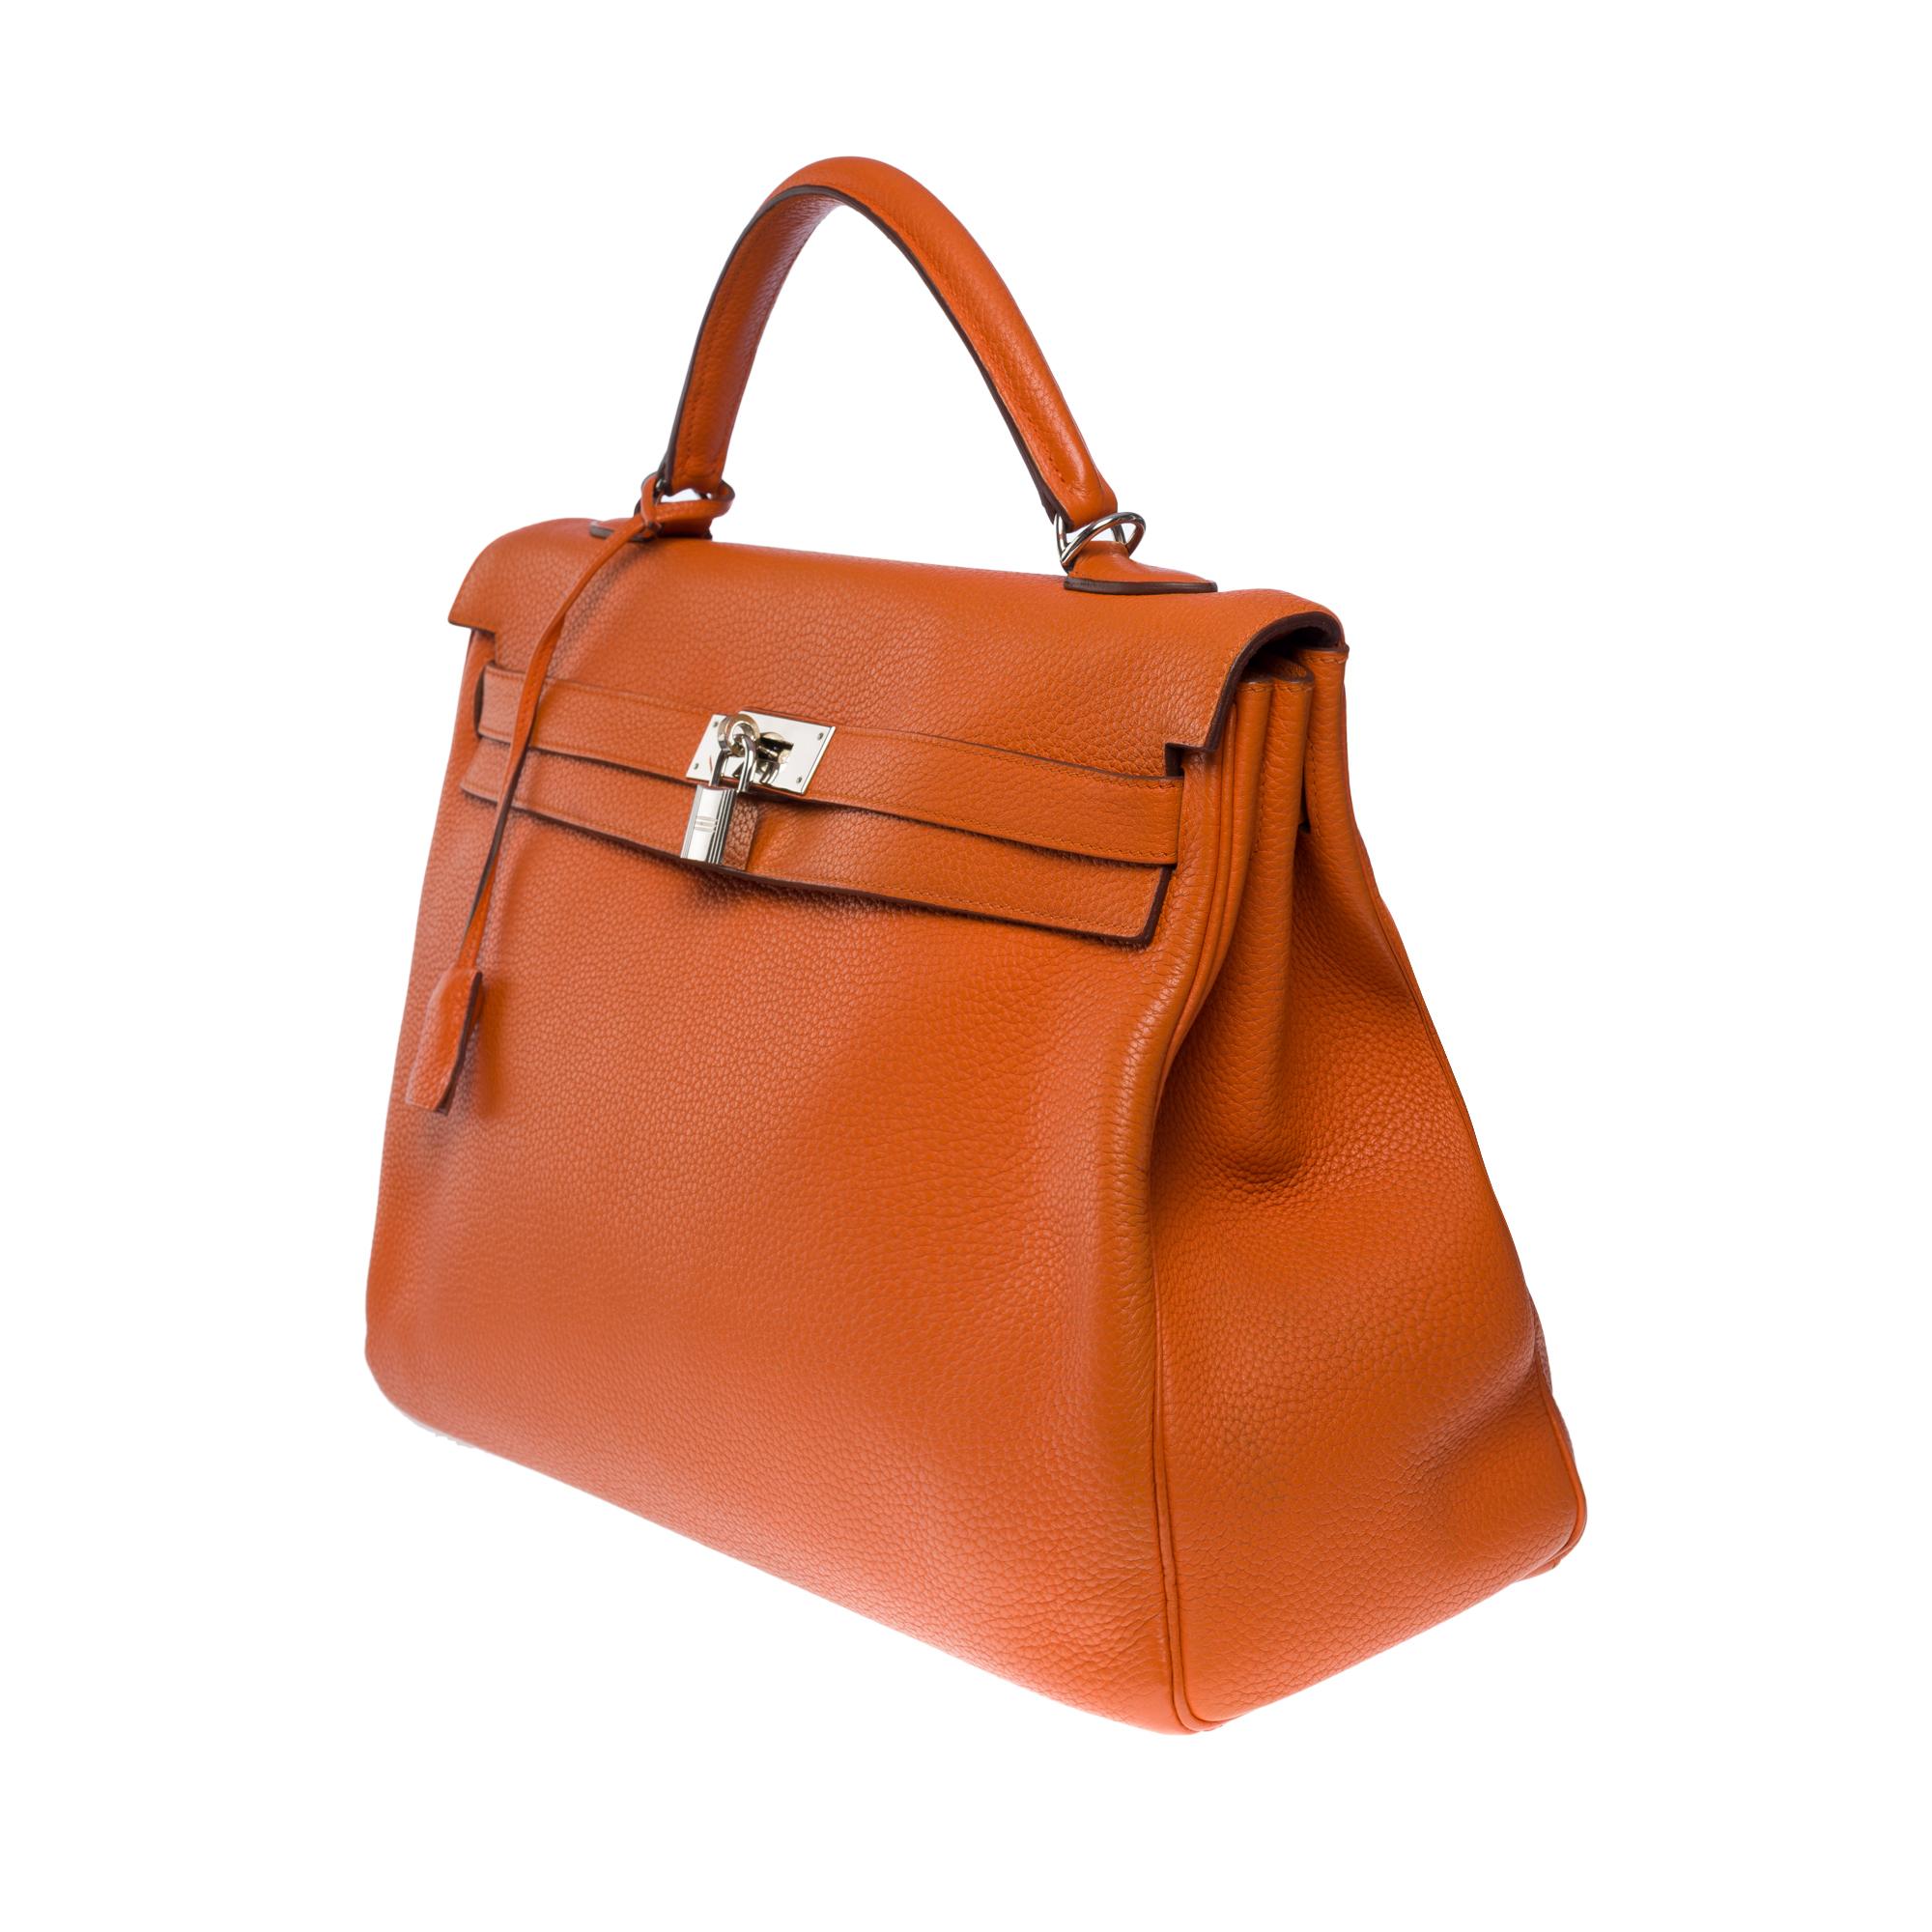 Hermes Kelly 40 retourne handbag strap in Orange Togo leather, SHW 1